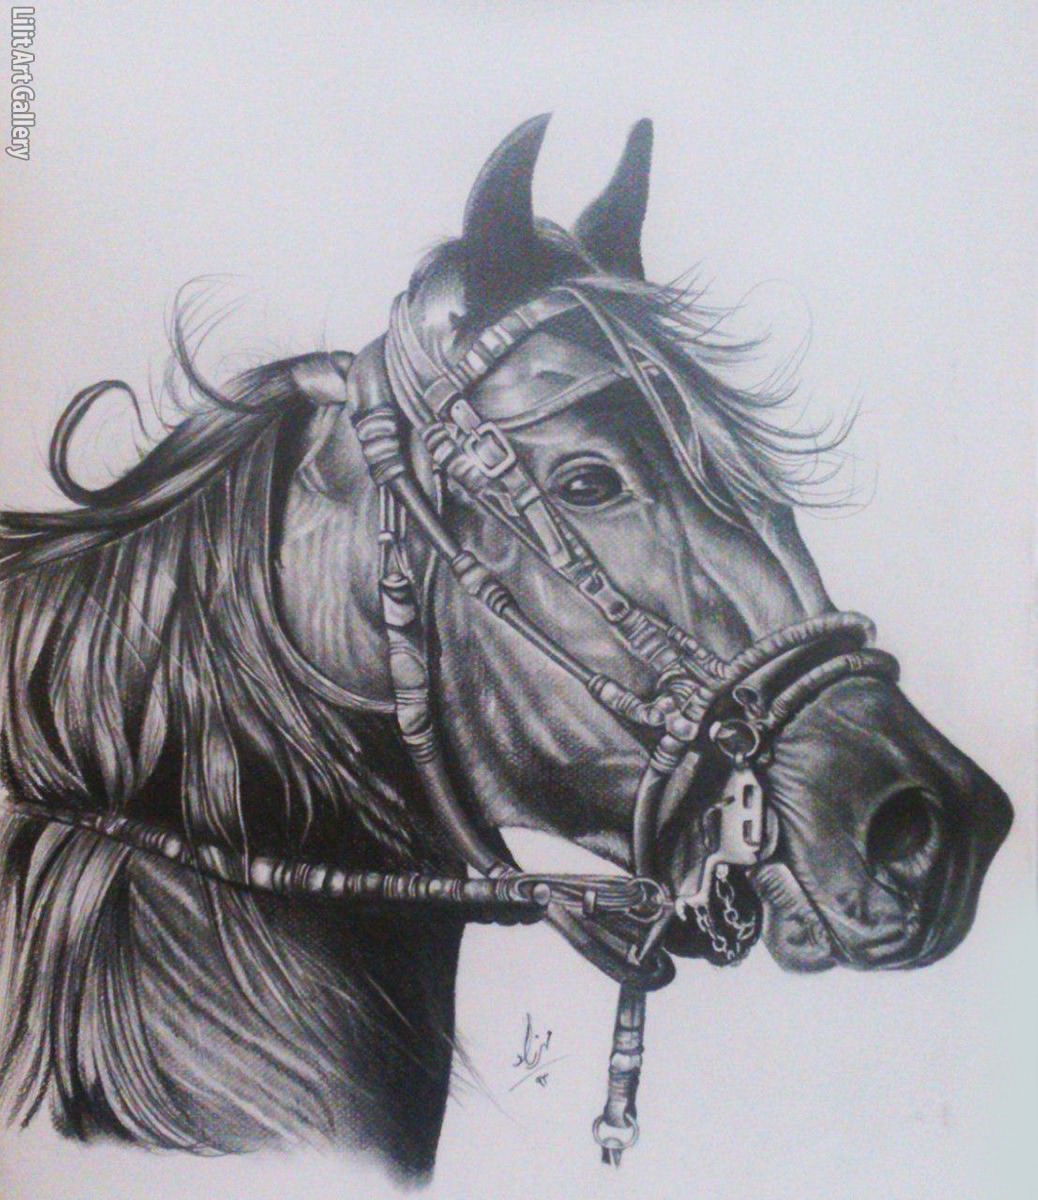 نقاشی اسب ساده